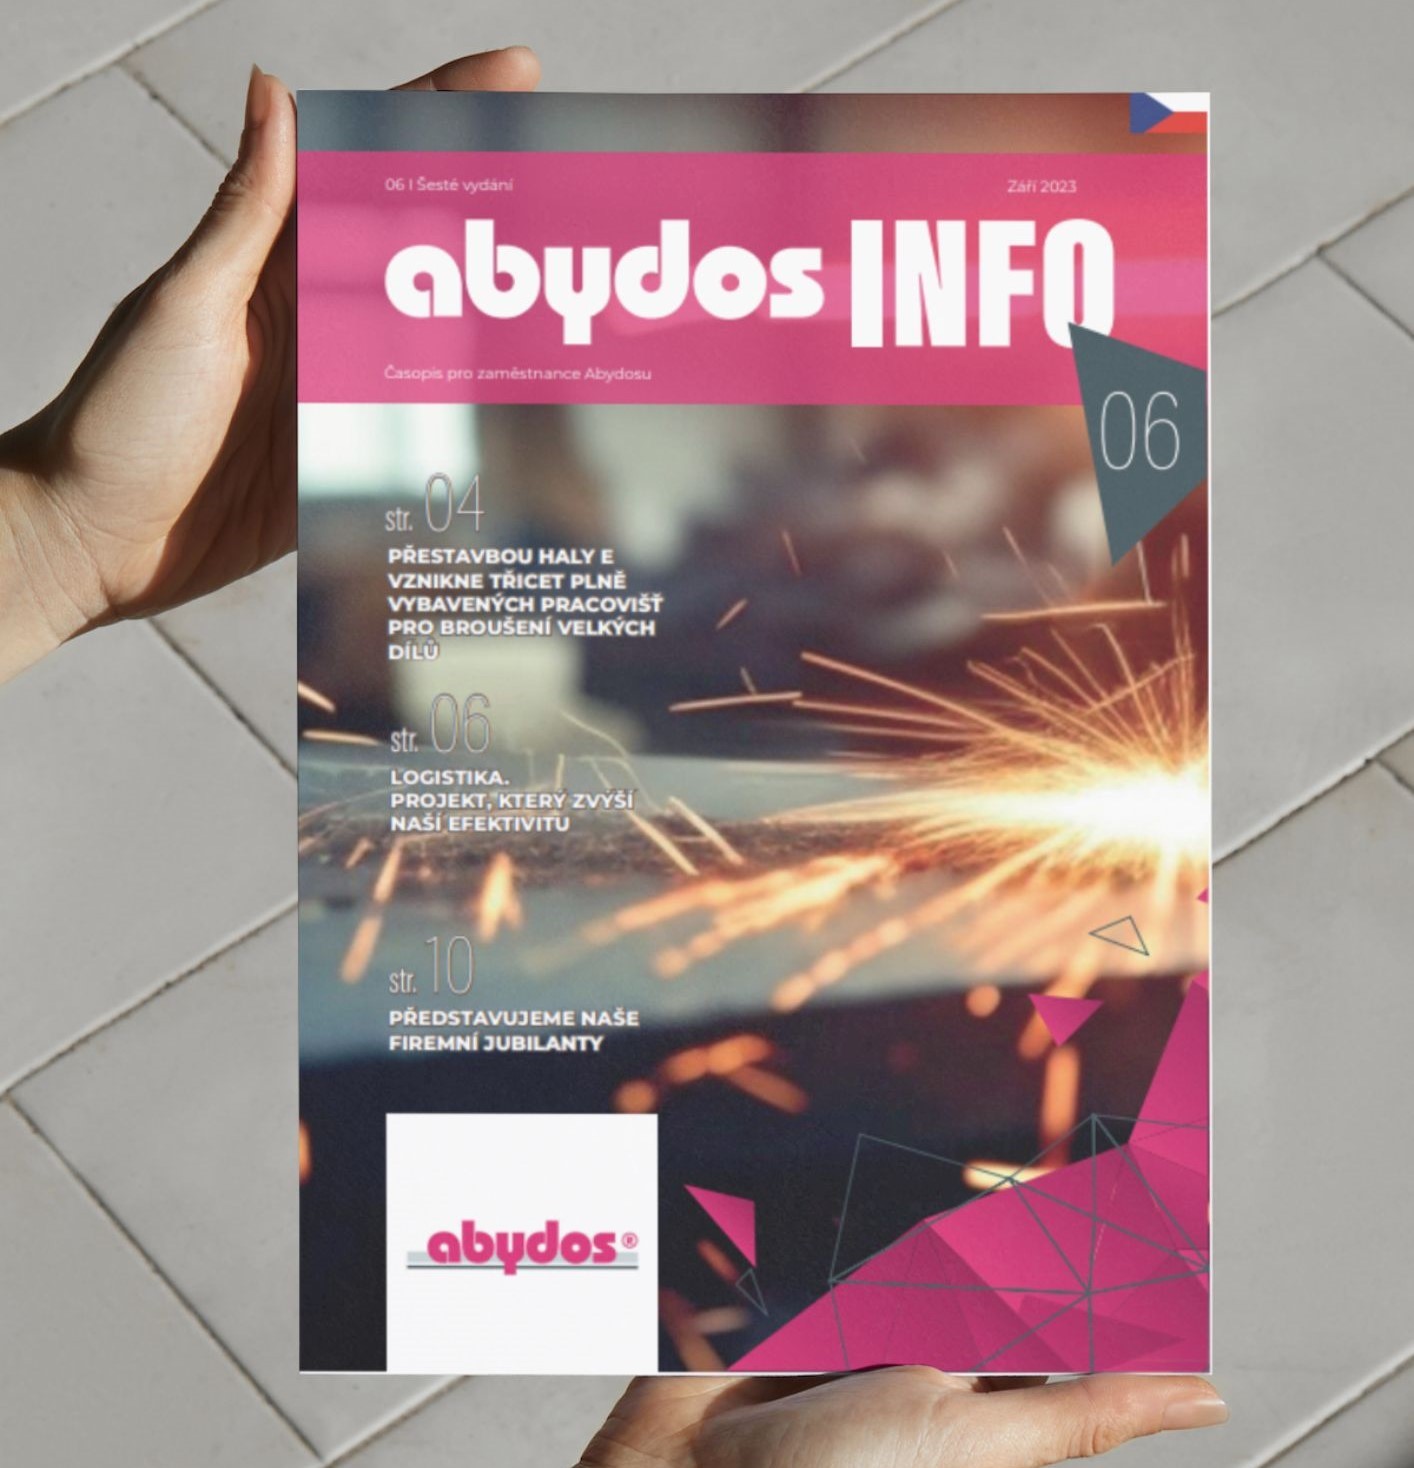 Abydos Info компанийн сэтгүүлийн шинэ дугаар